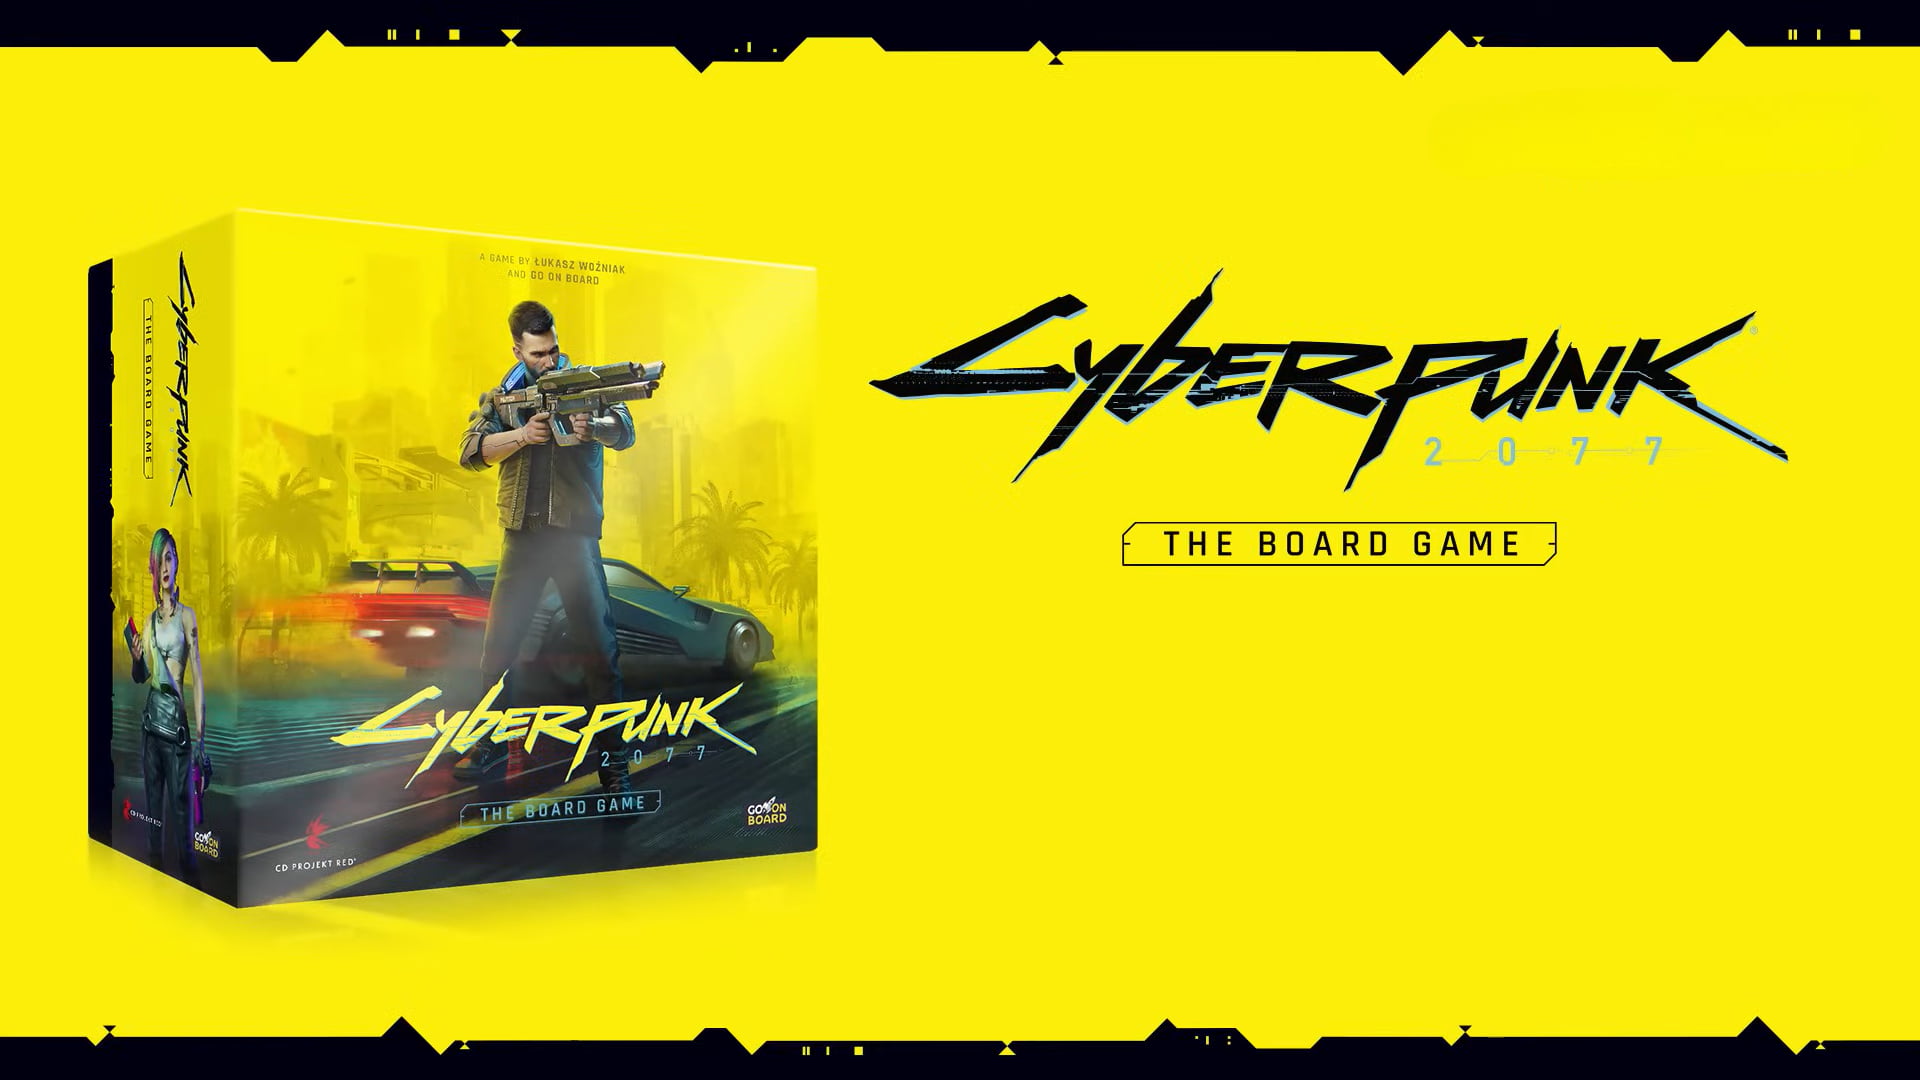 Gra planszowa Cyberpunk 2077 zaprezentowana na żółtym tle z dużym logotypem gry po prawej stronie. Na przedniej stronie pudełka przedstawiono mężczyznę trzymającego futurystyczną broń i kobiety z różowymi włosami w cyberpunkowej scenerii miasta.